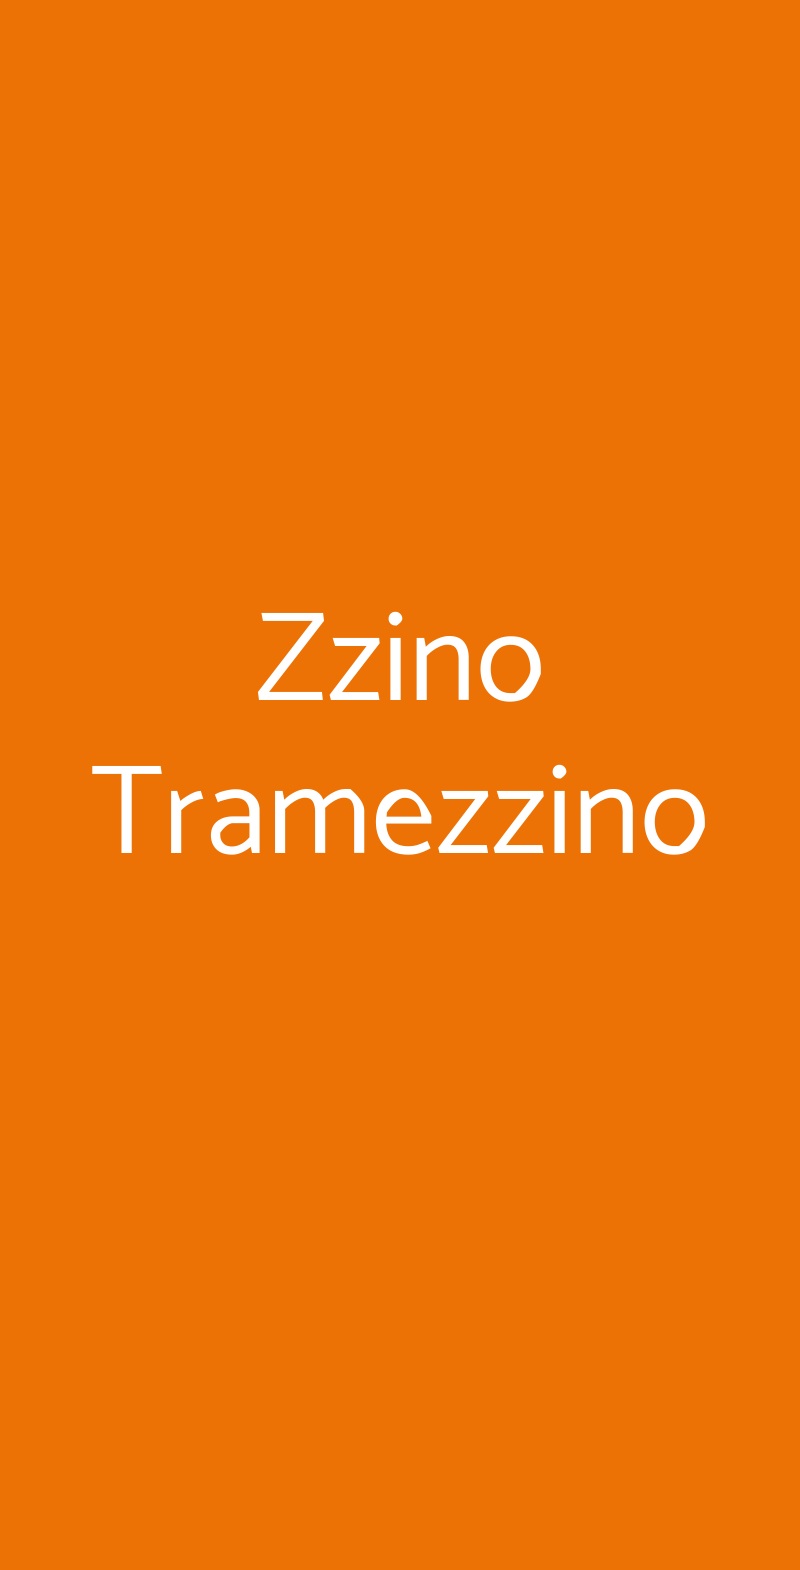 Zzino Tramezzino Bergamo menù 1 pagina